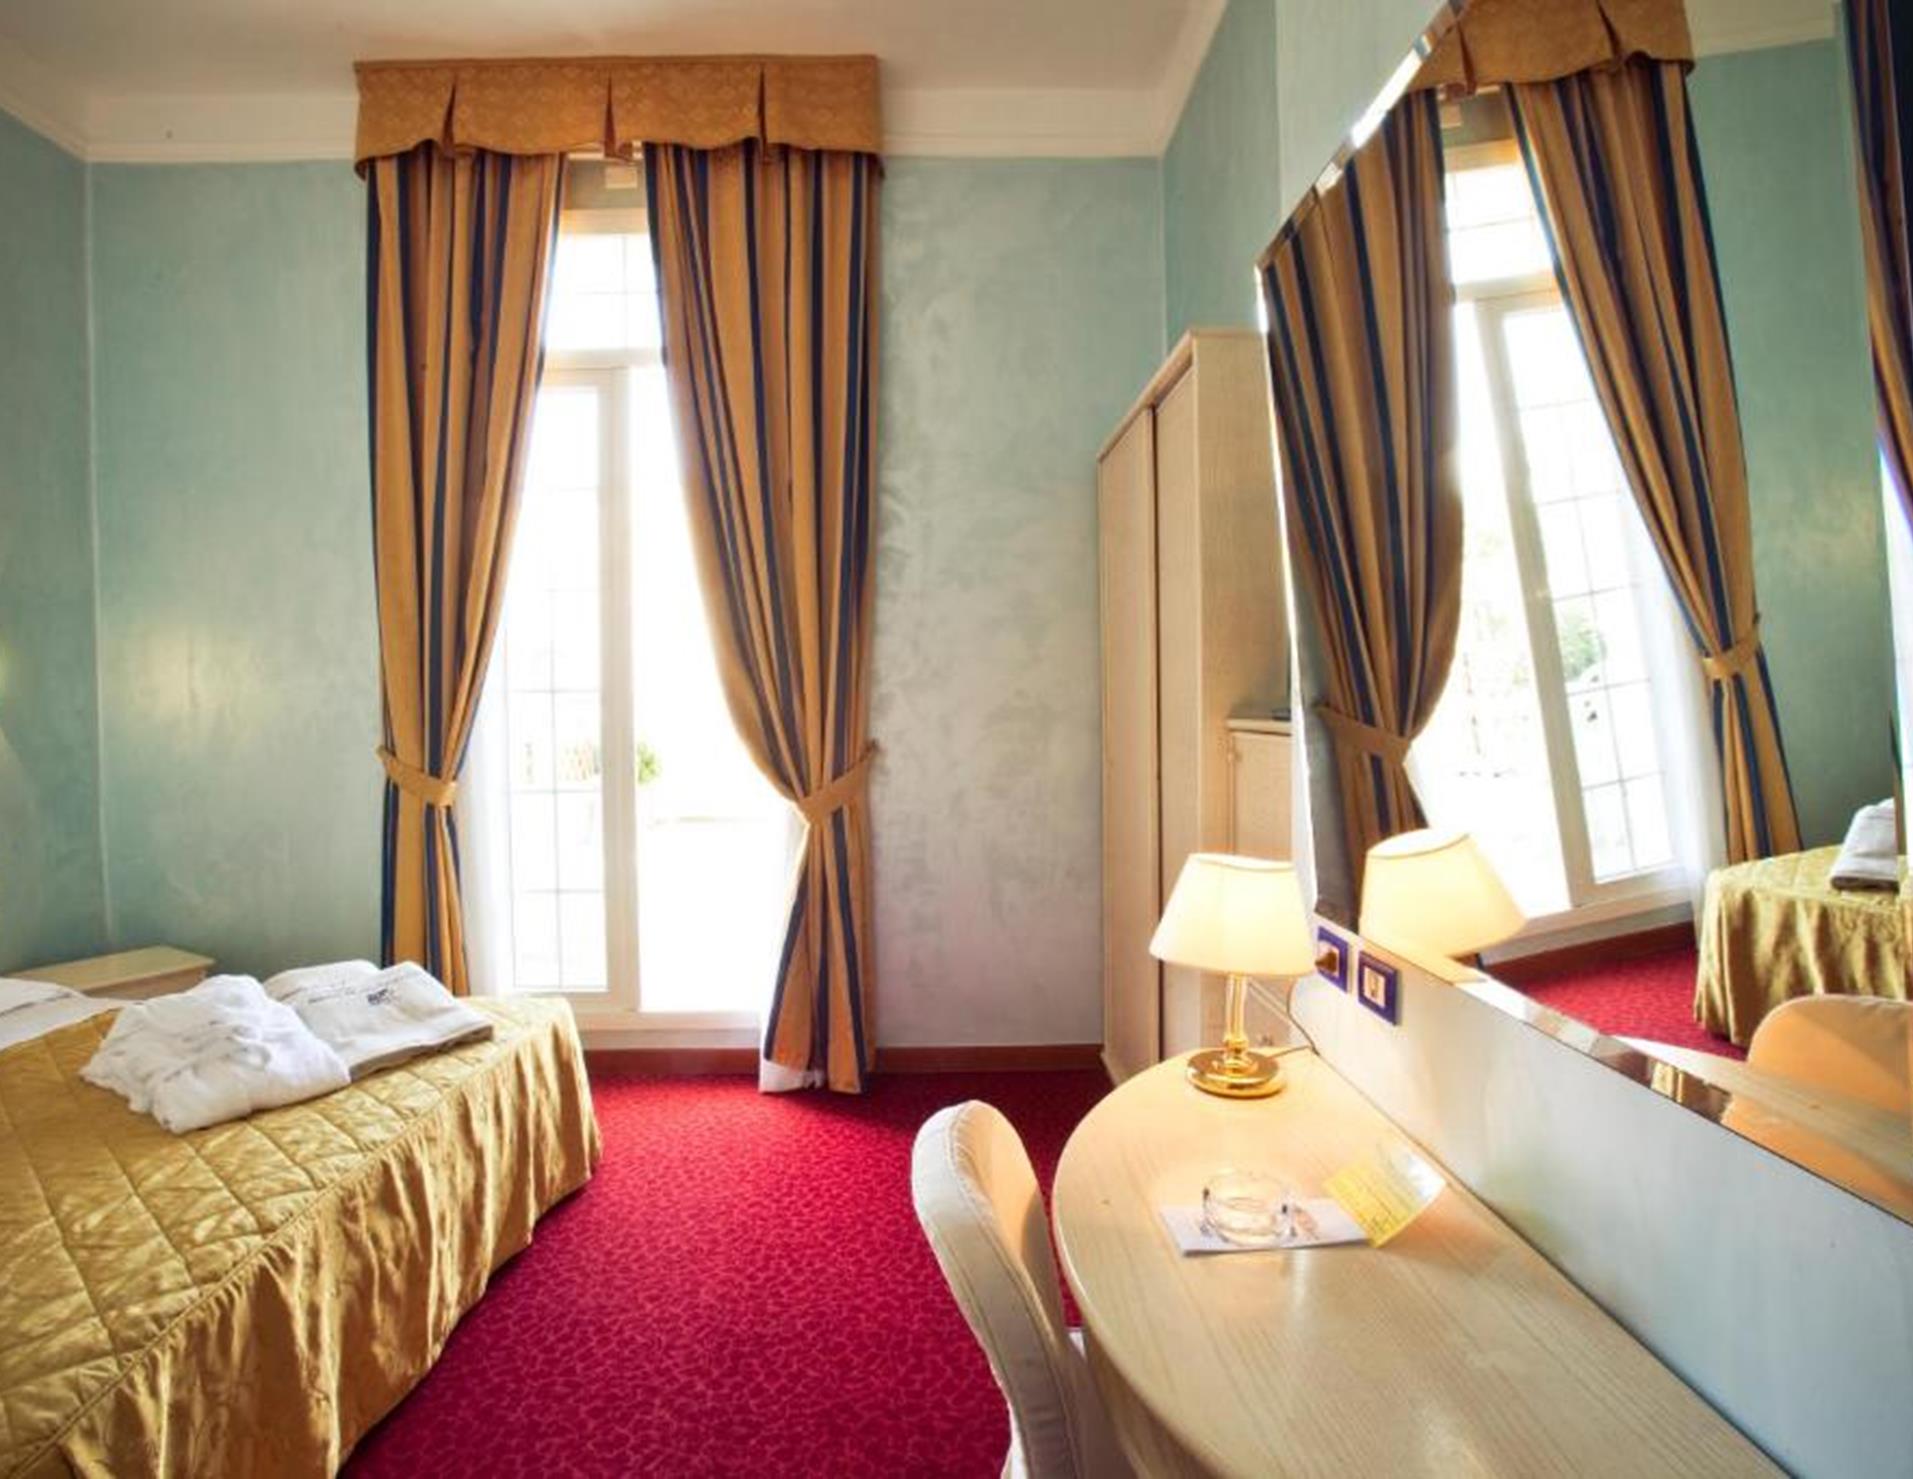 Grand Hotel Cesenatico - Room 7